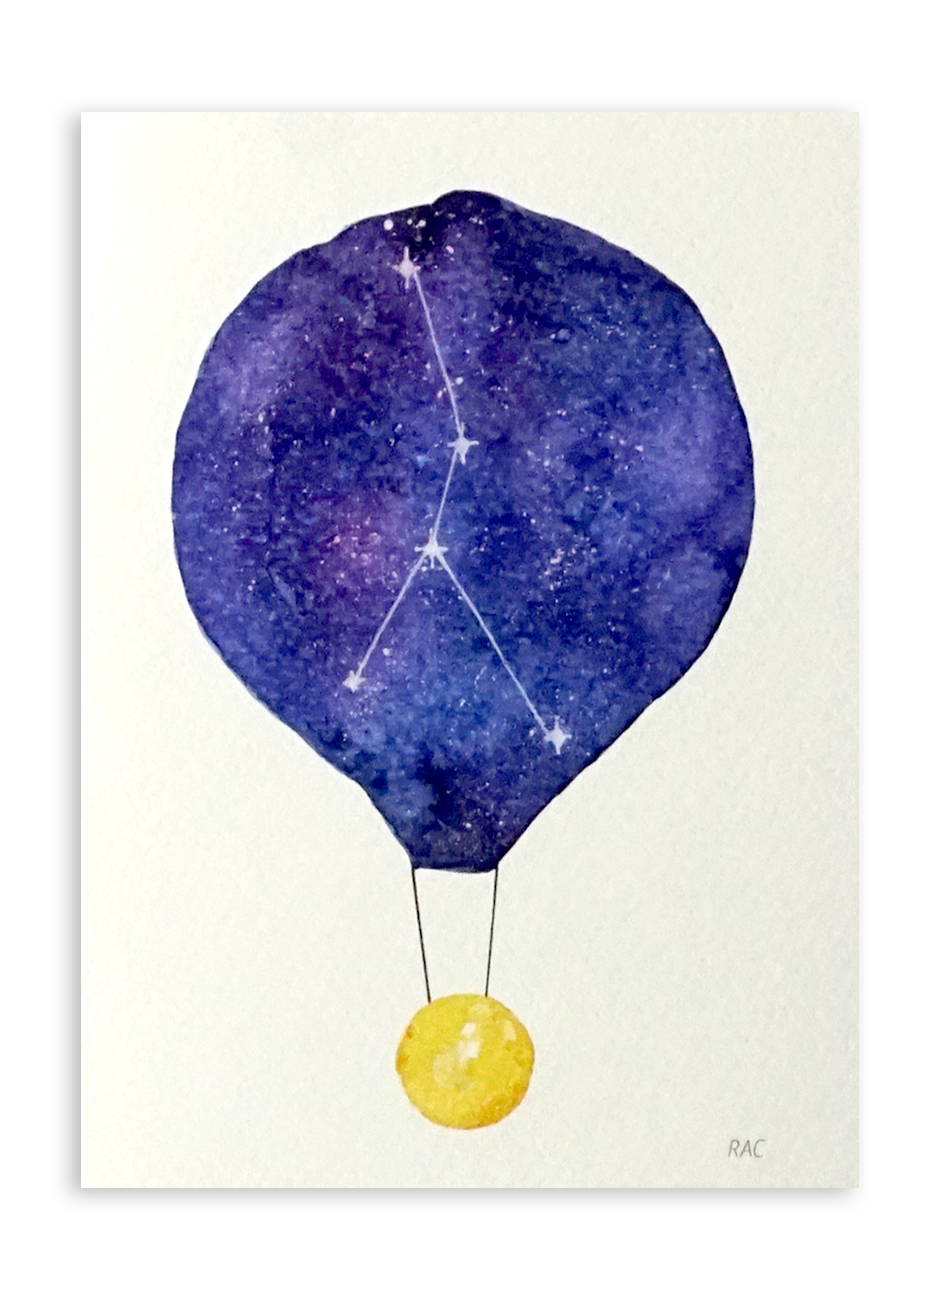 Felicitare - Constelatie Rac - Balon cu aer cald | Ana-Maria Galeteanu Ilustrator